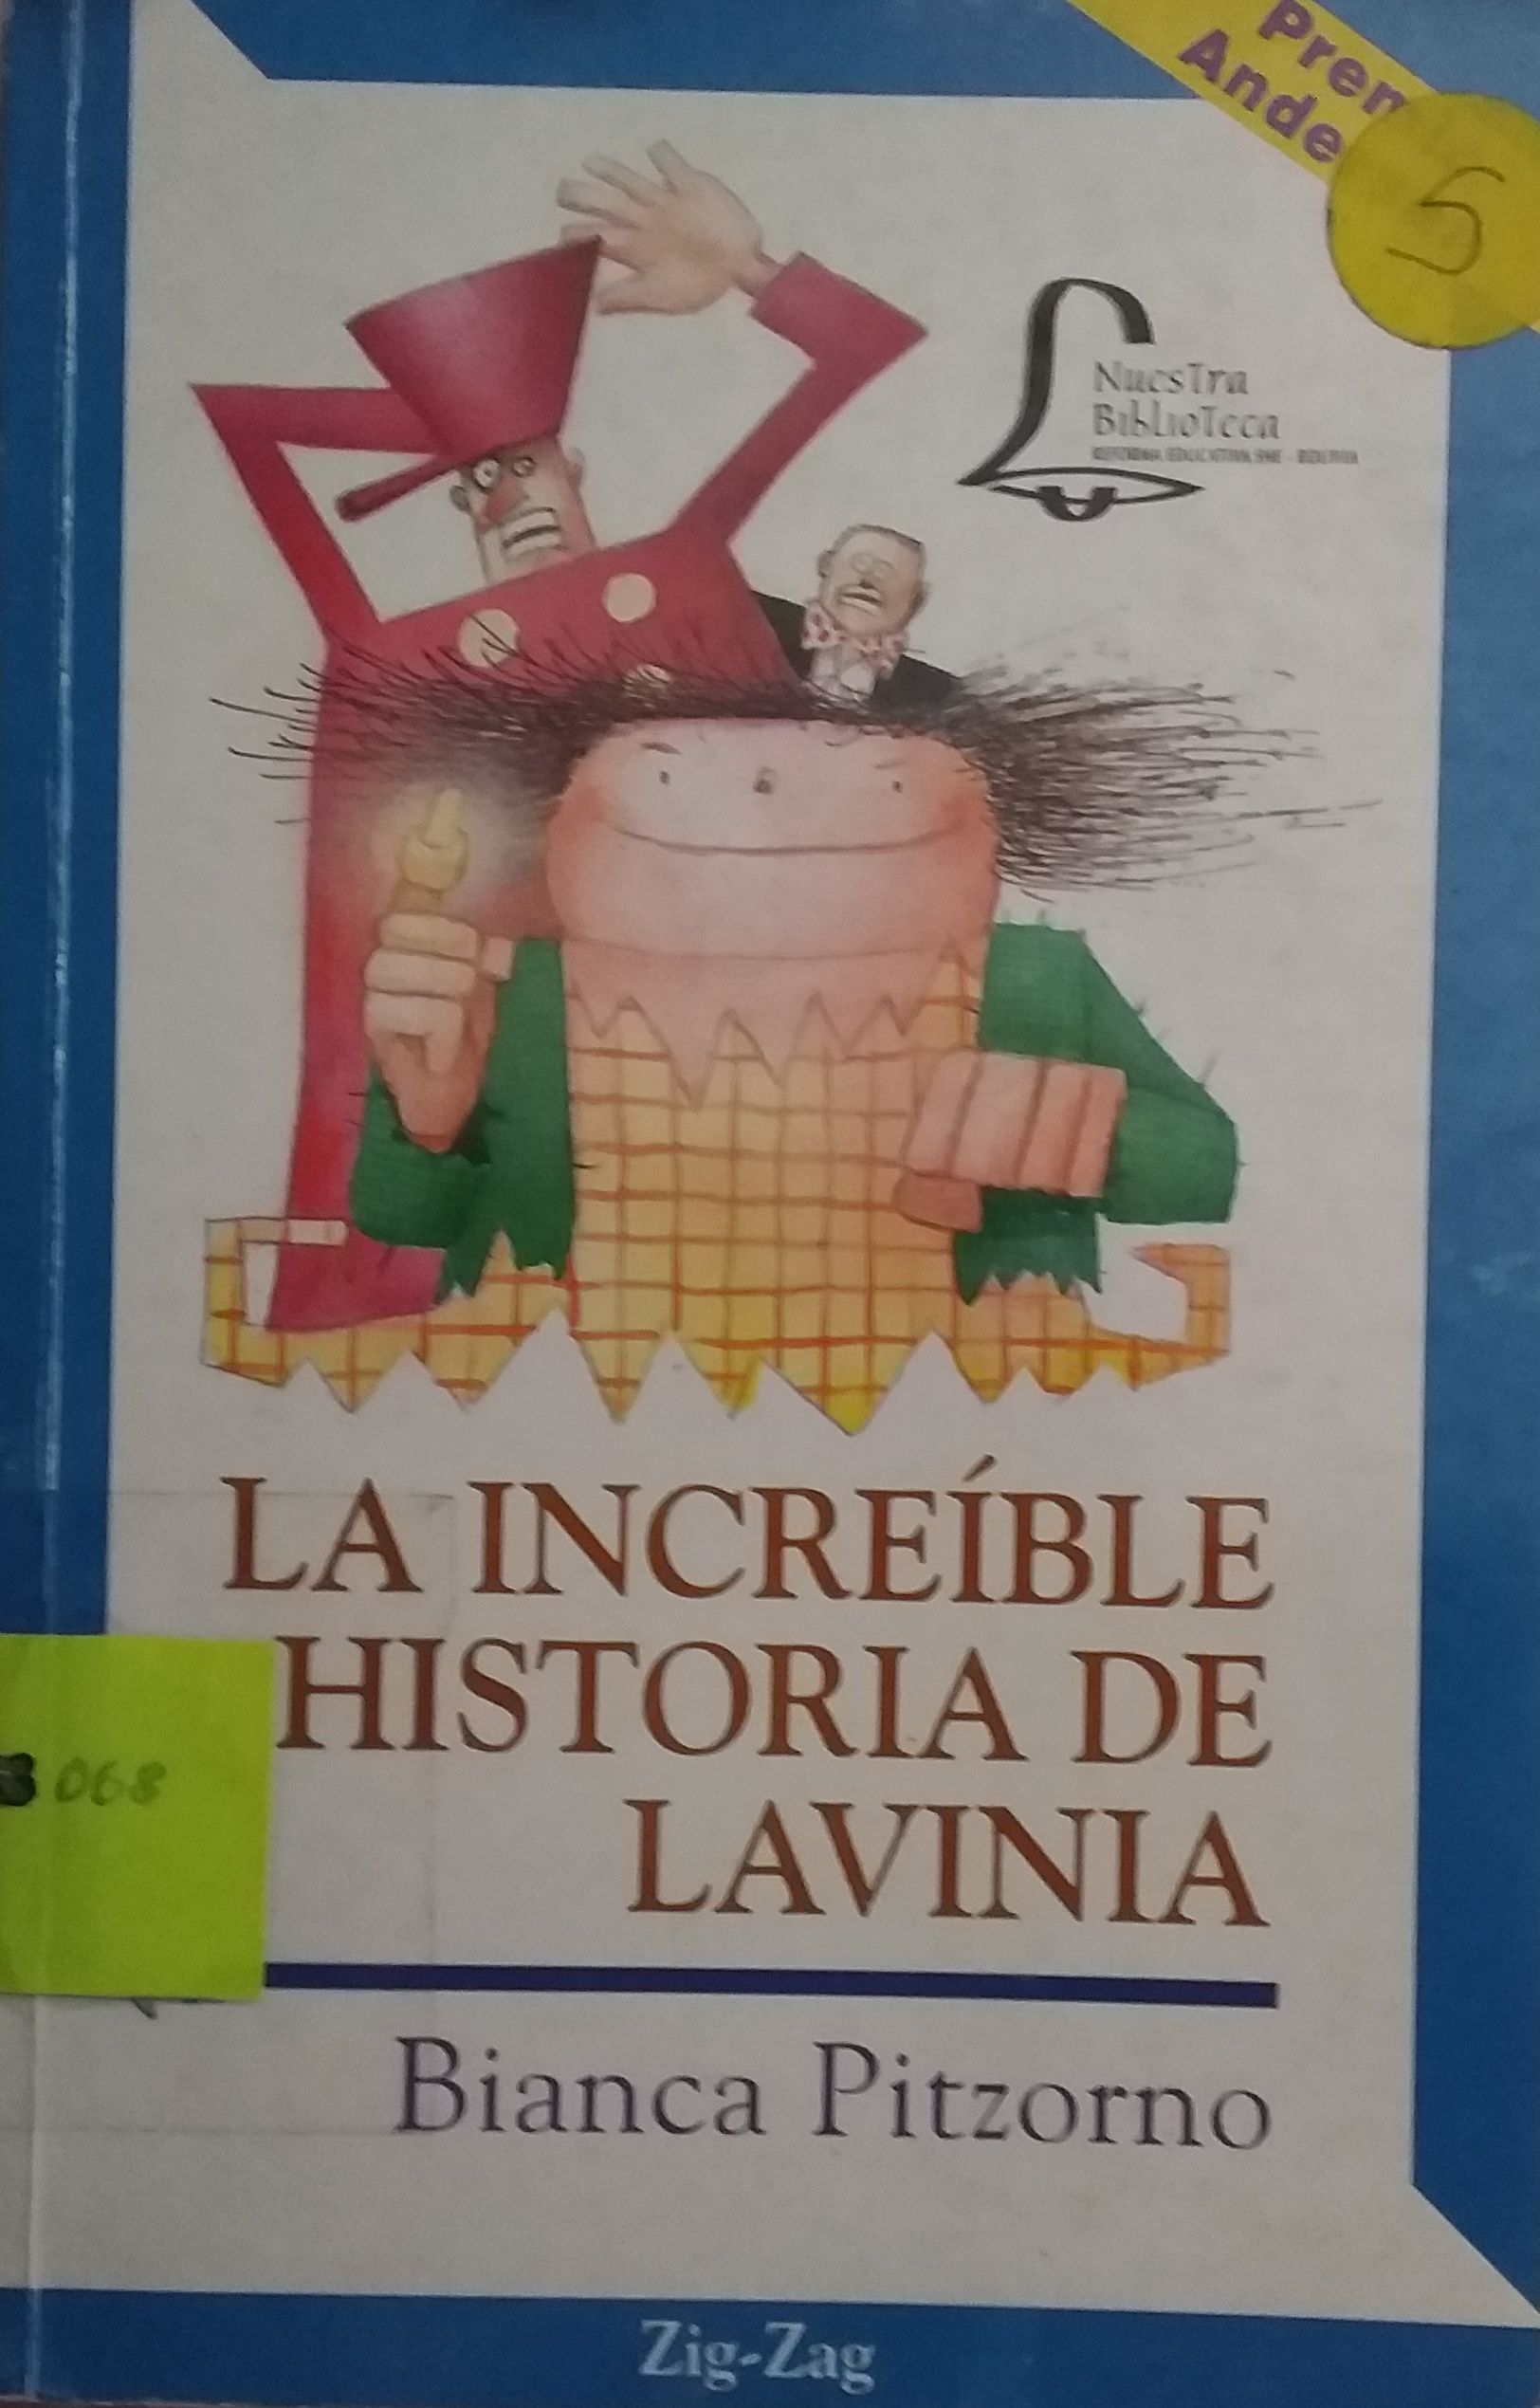 Las Increíbles Historias de Lavinia